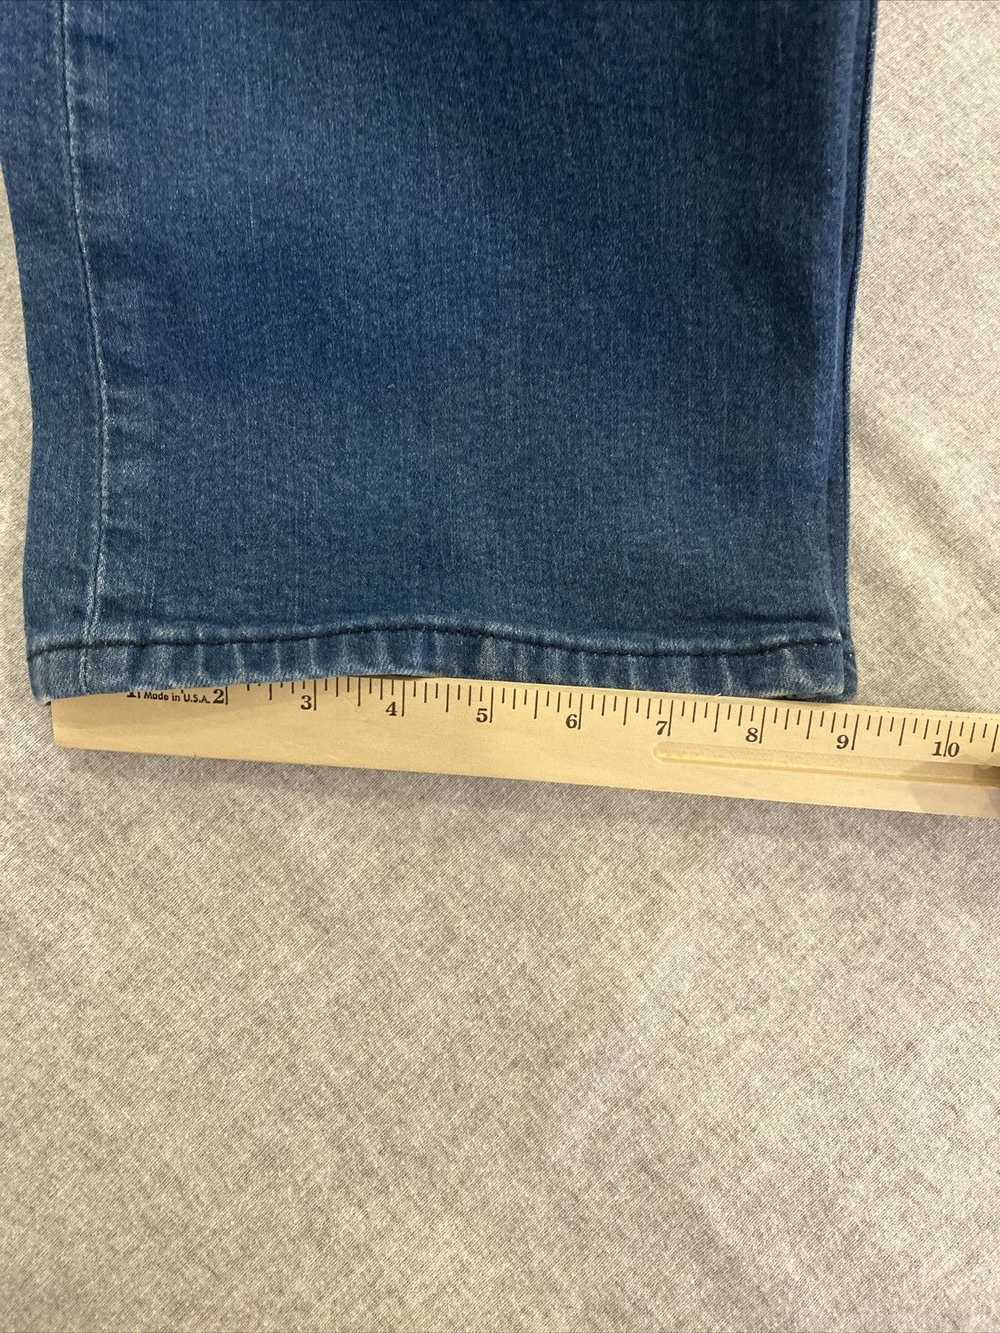 Levi's Levis 569 Jeans Mens 42x30 Blue Straight R… - image 10